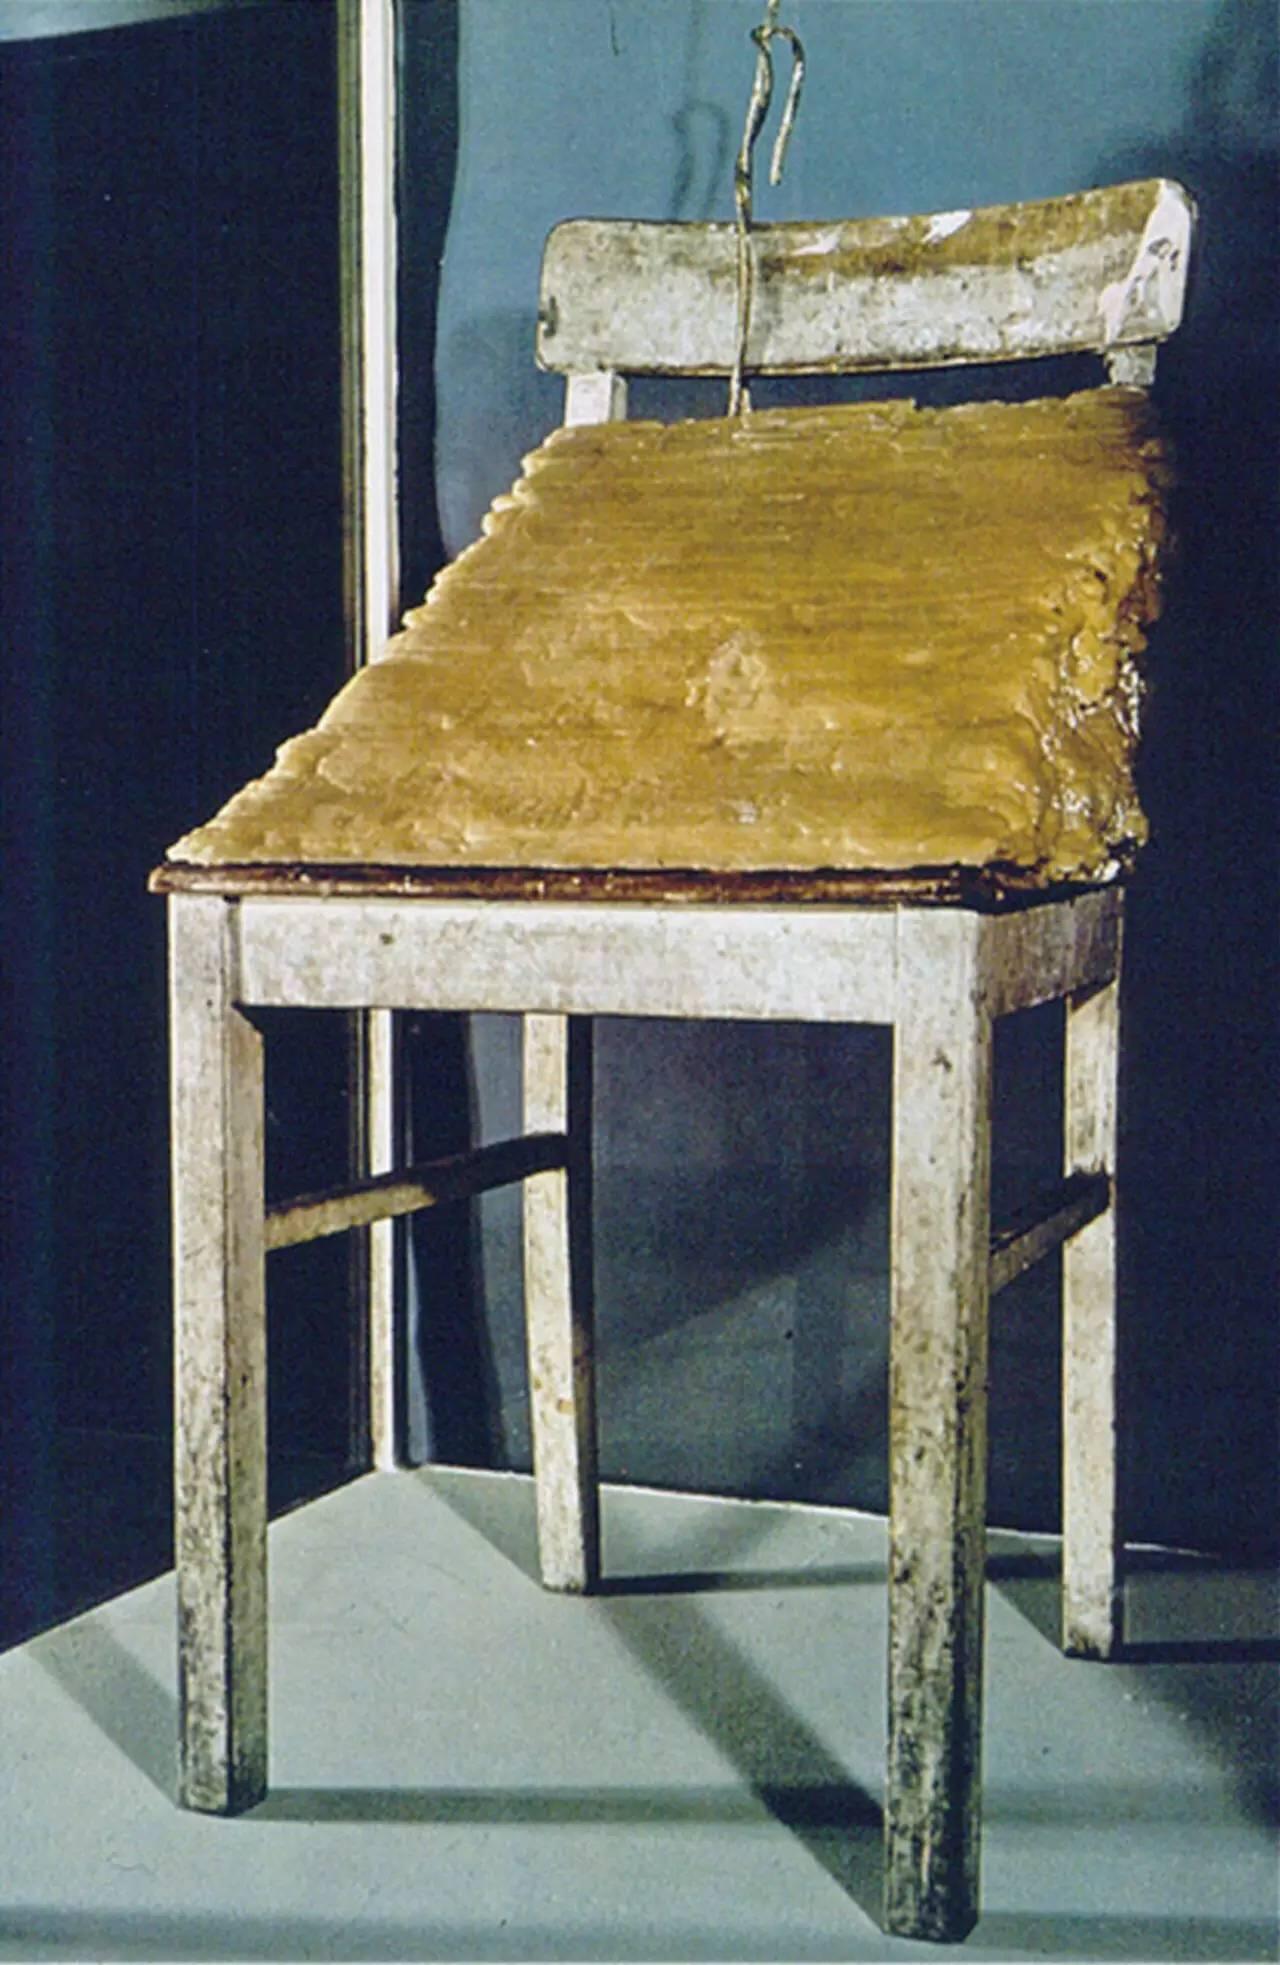 《油脂椅》是博伊斯最著名的作品, 在一把木质椅子上堆叠三角形状的一